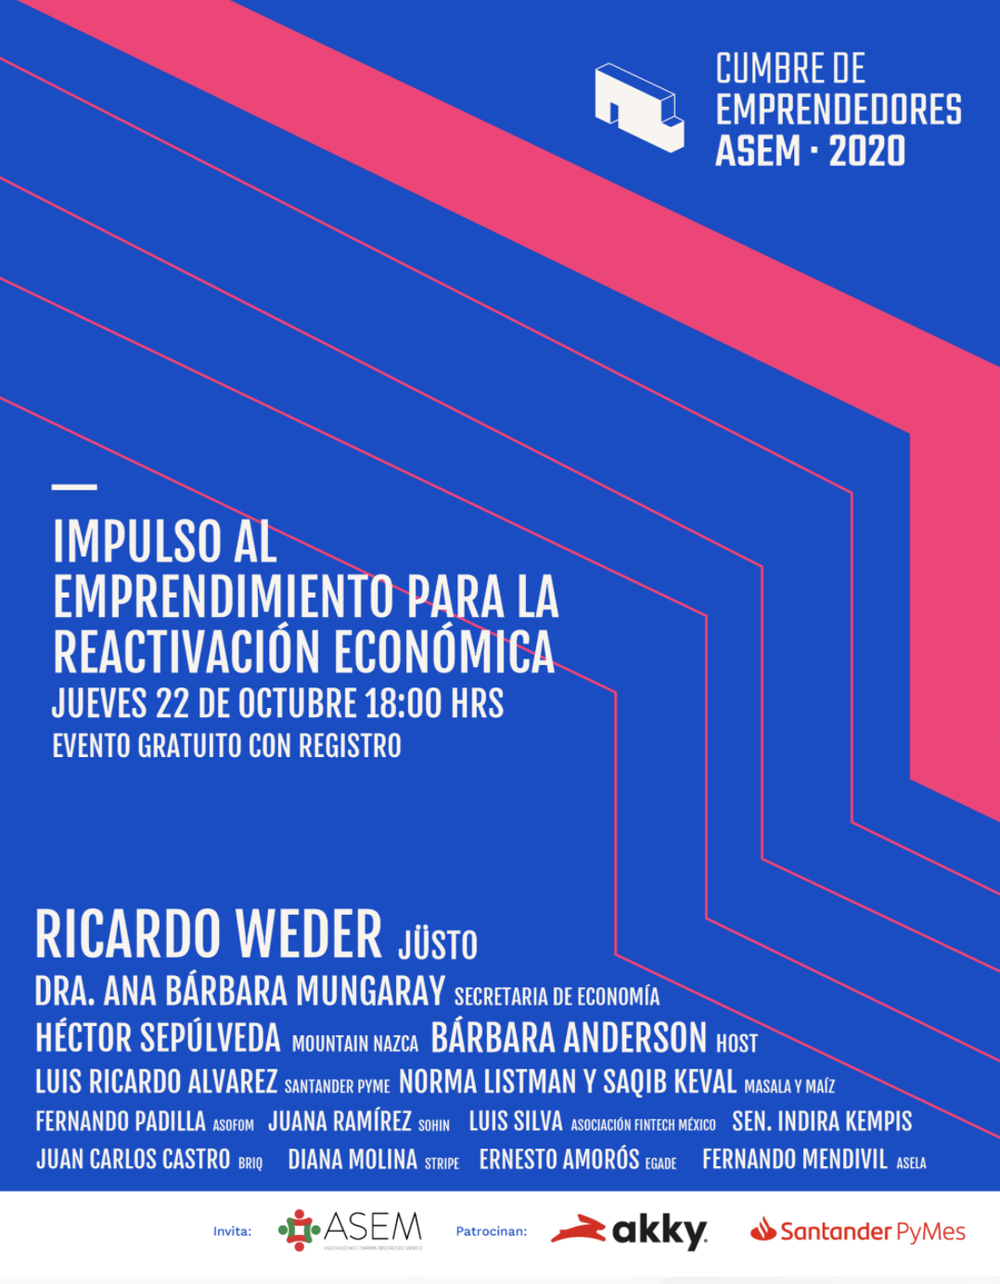 La Asociación de Emprendedores de México te invita gratis a su tercera cumbre este 22 de octubre